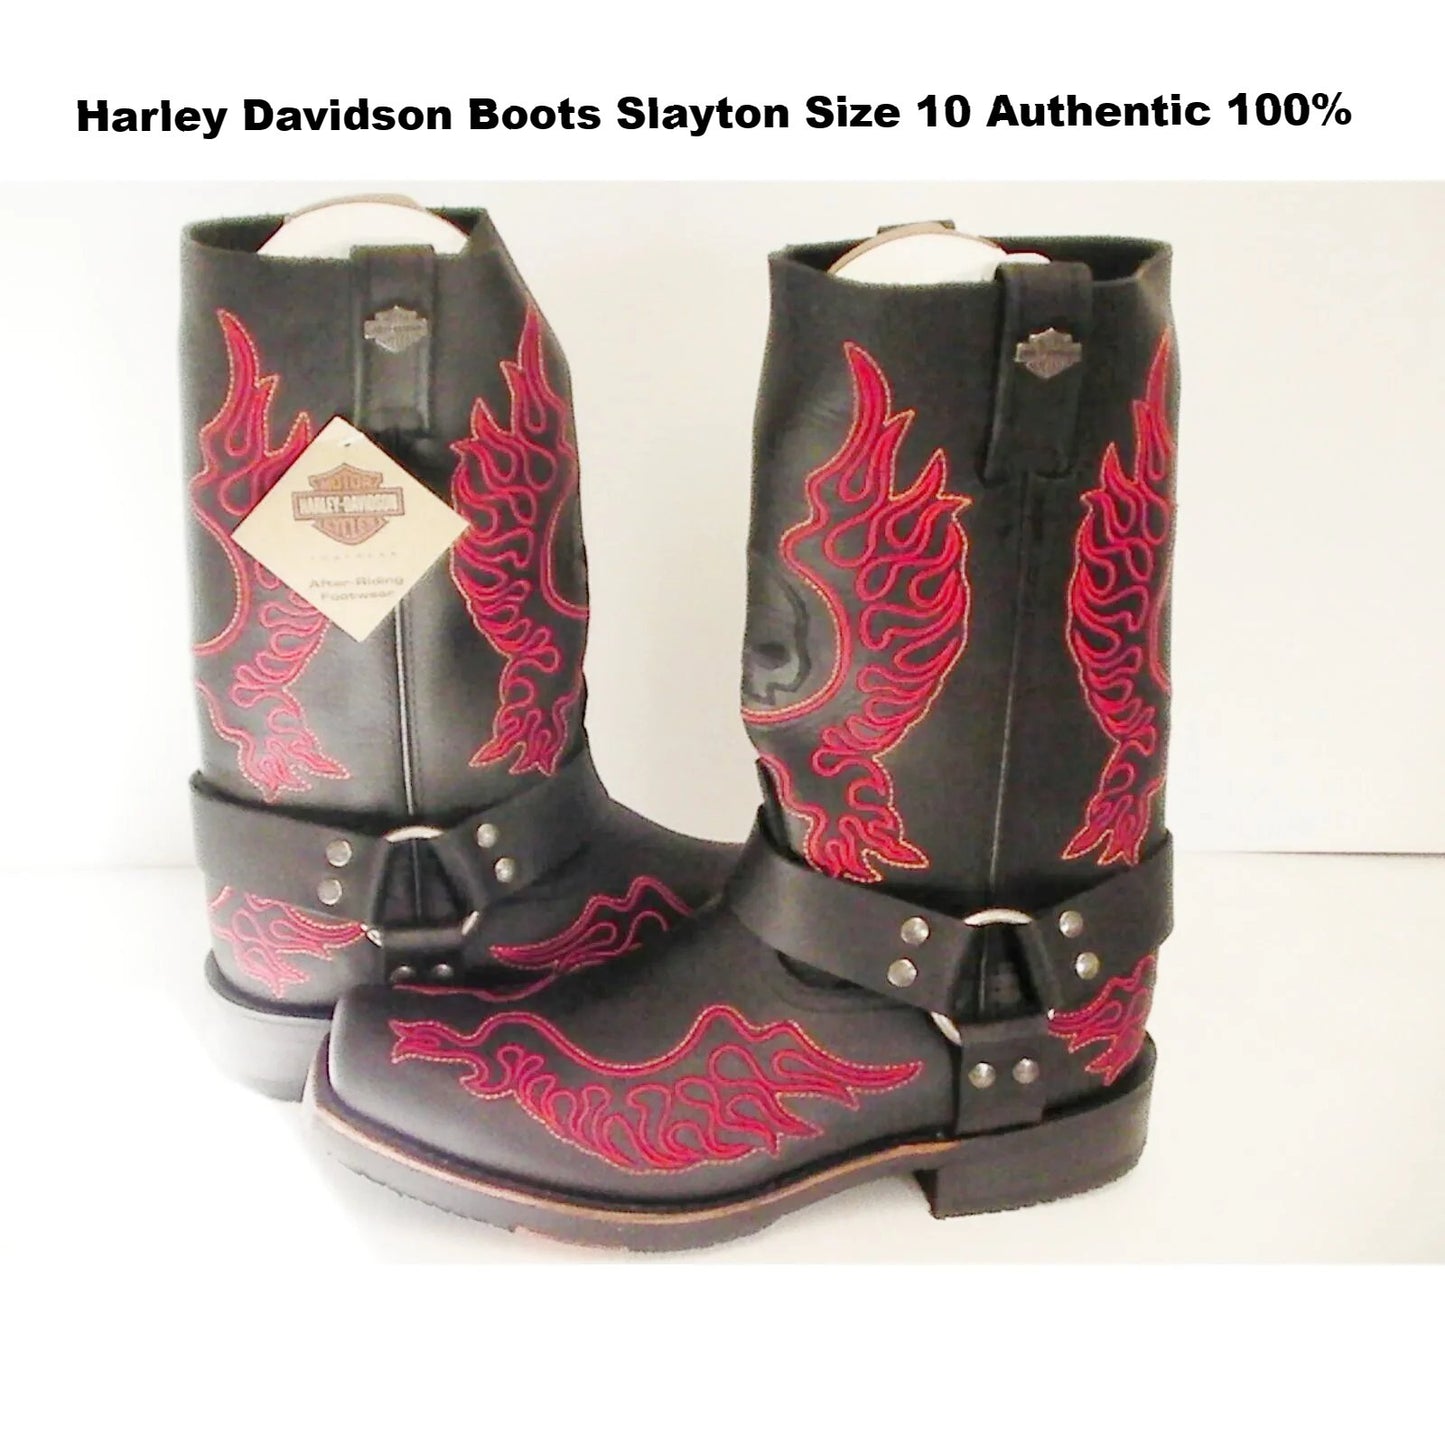 Harley Davidson boots Slayton D93141 leather black oil resisting size 10 men us